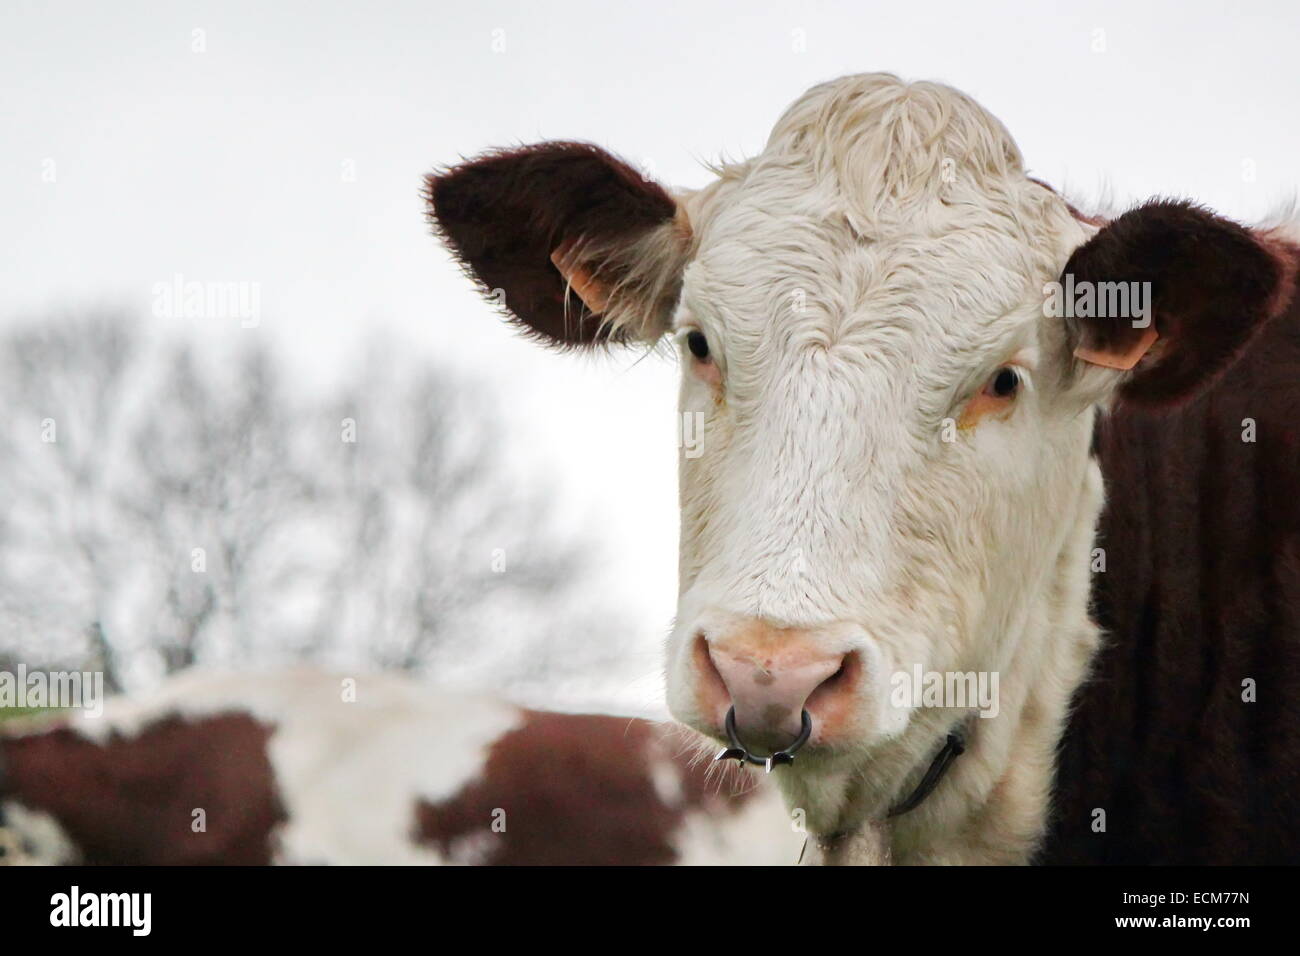 Porträt von braunen und weißen Kuh mit einem metallischen Ring in der Nase  Stockfotografie - Alamy